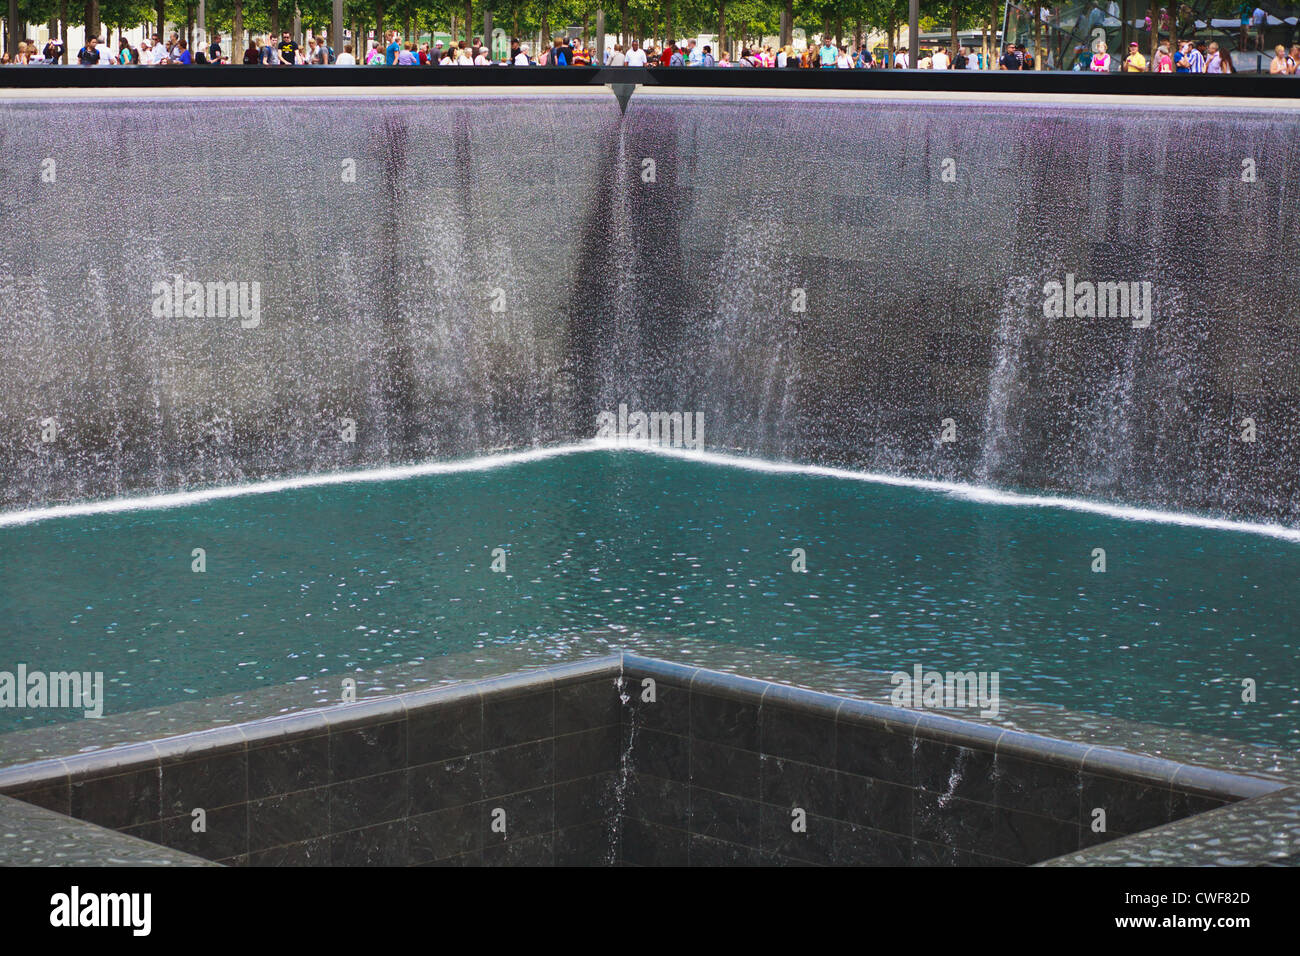 Le Mémorial National du 11 septembre, la ville de New York, conçu par Arad et Walker, ouvert le 10e anniversaire d'attaques Banque D'Images